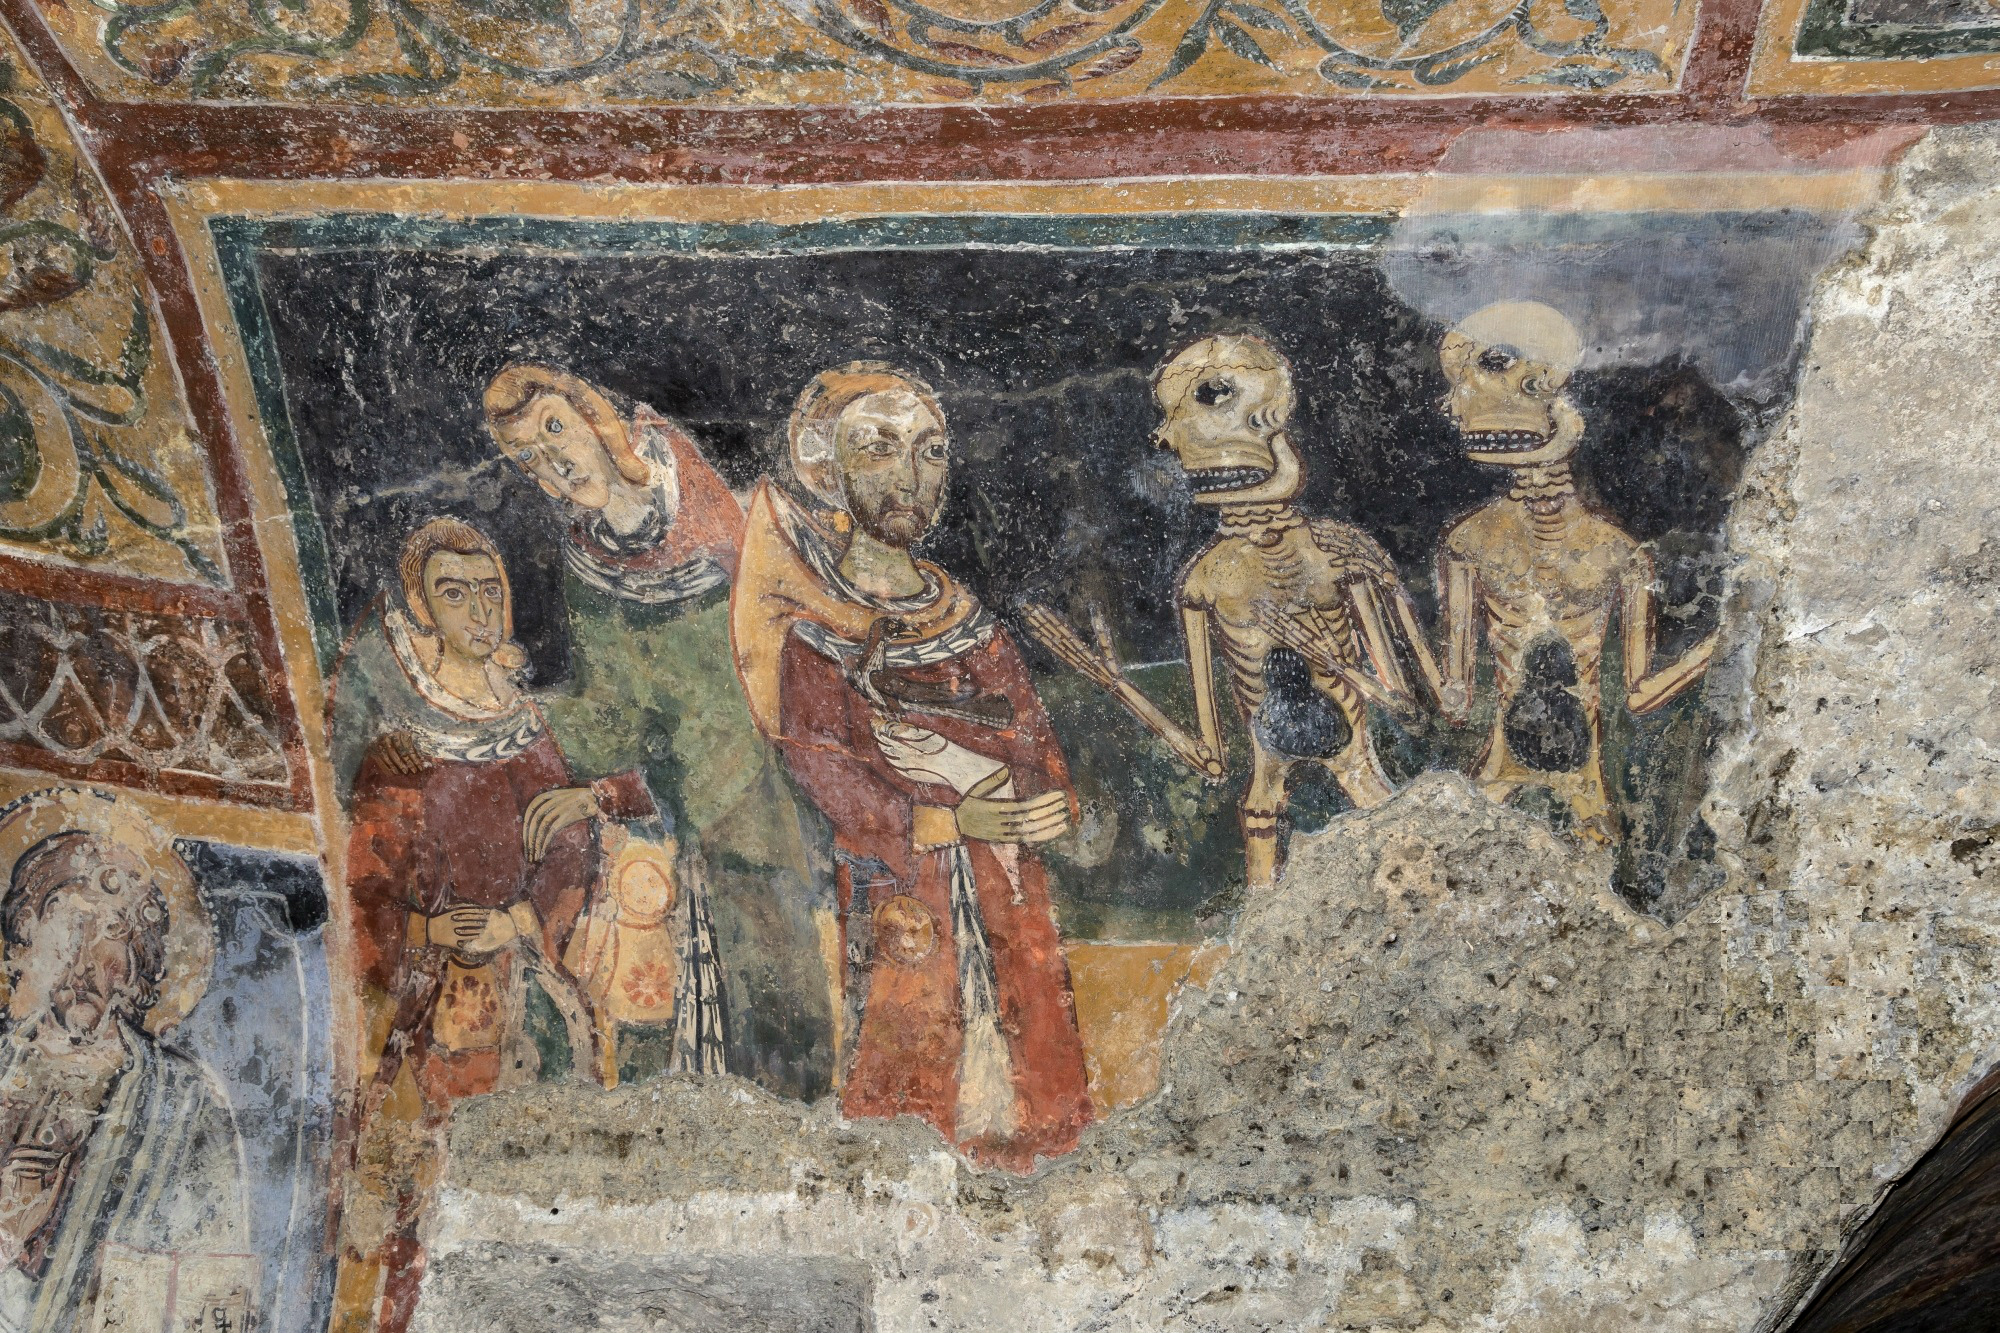 Sconosciuto, Melfi - Incontro tra vivi e morti, Chiesa rupestre di Santa Margherita, fotografia digitale